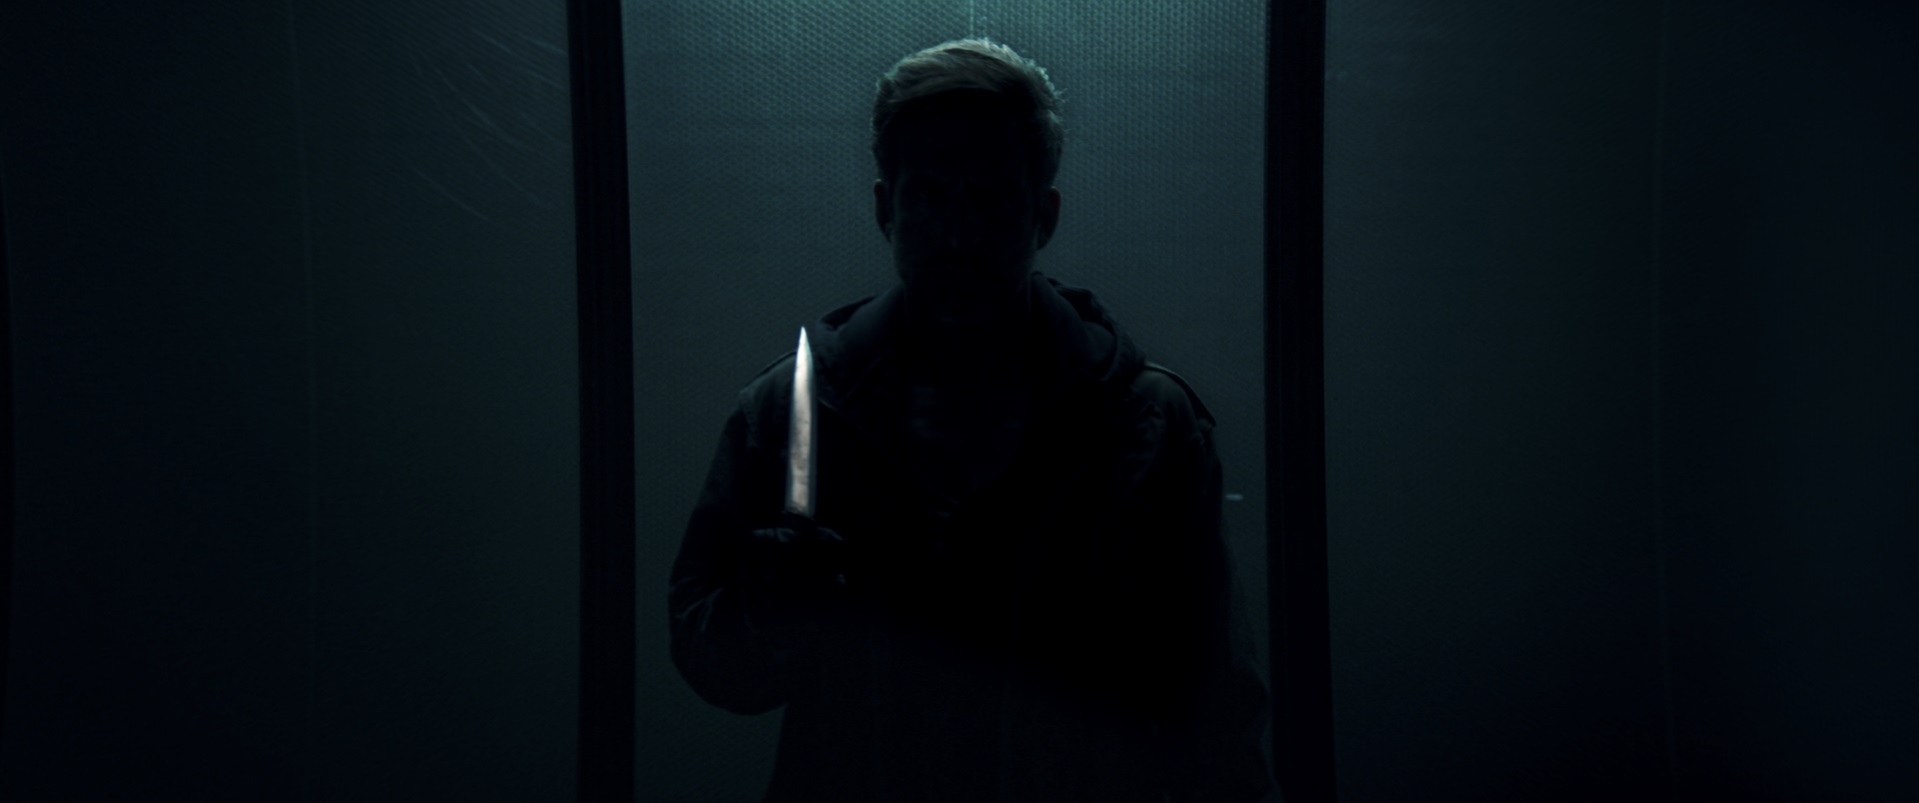 Auf dem Bild erkennt man eine Silhouette des Serienkiller "Der Cellist", wie er vor der Kamera mit einem Messer steht - Dark Glasses 